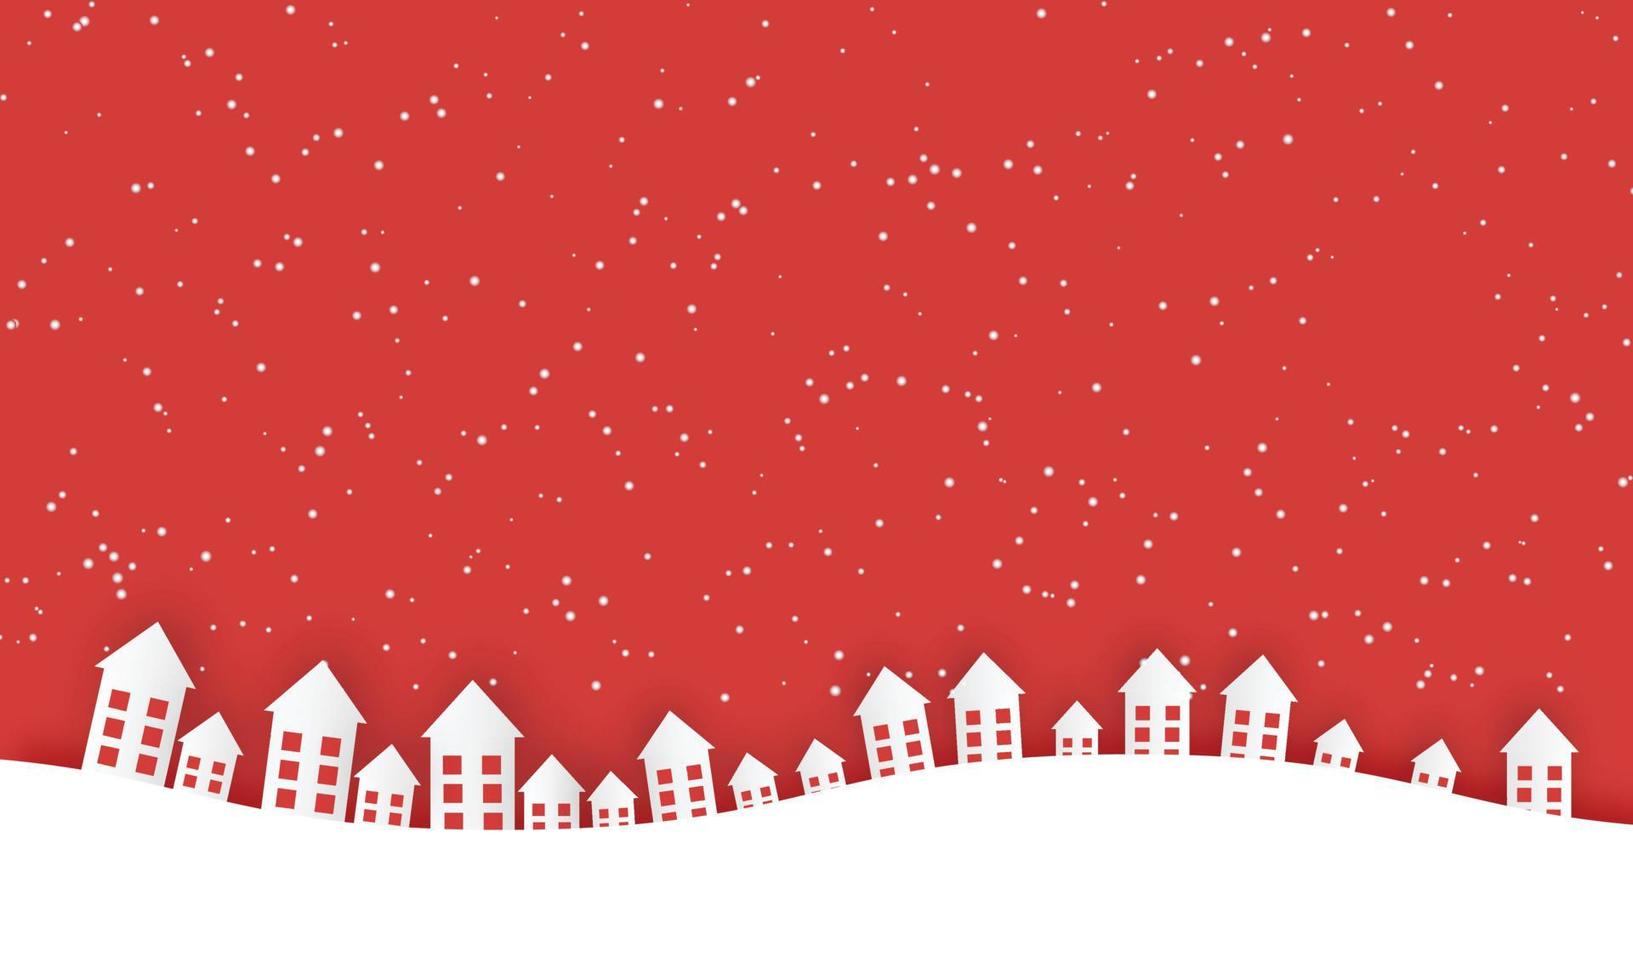 weihnachtskleinstadtsilhouette auf rotem hintergrund.glückliche feiertagsgrußkarte. Vektor